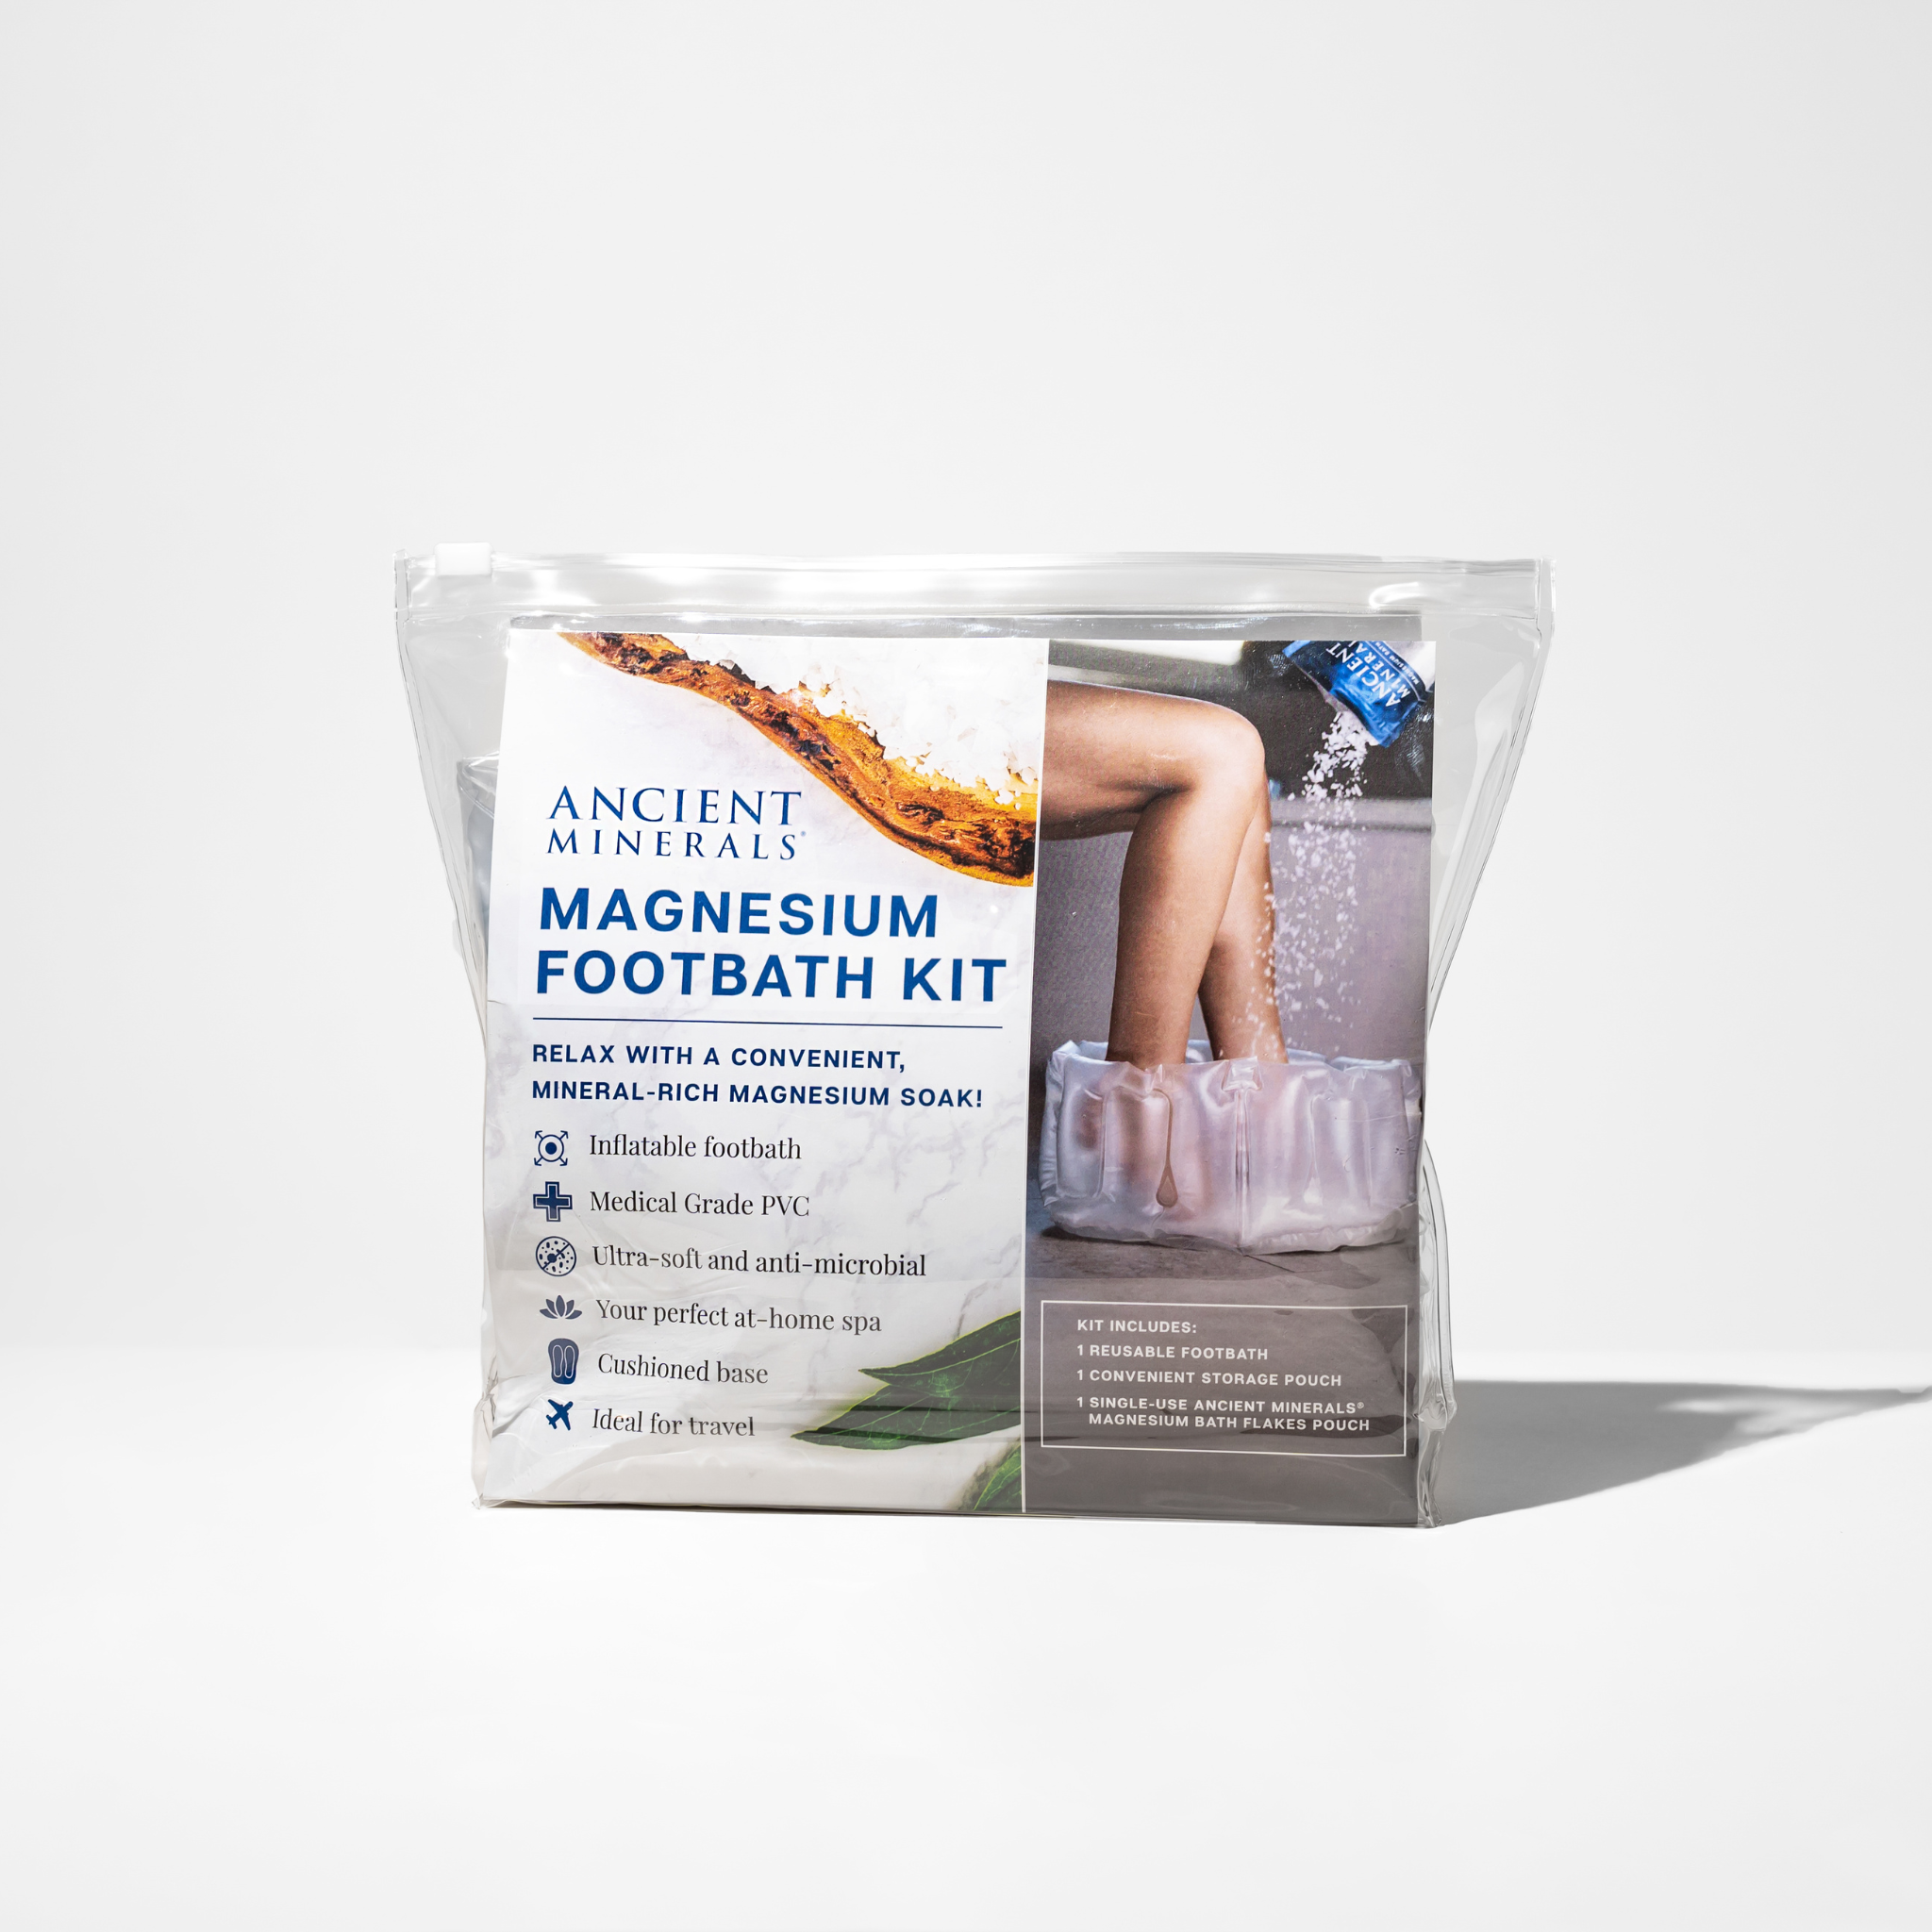 Magnesium Footbath Kit